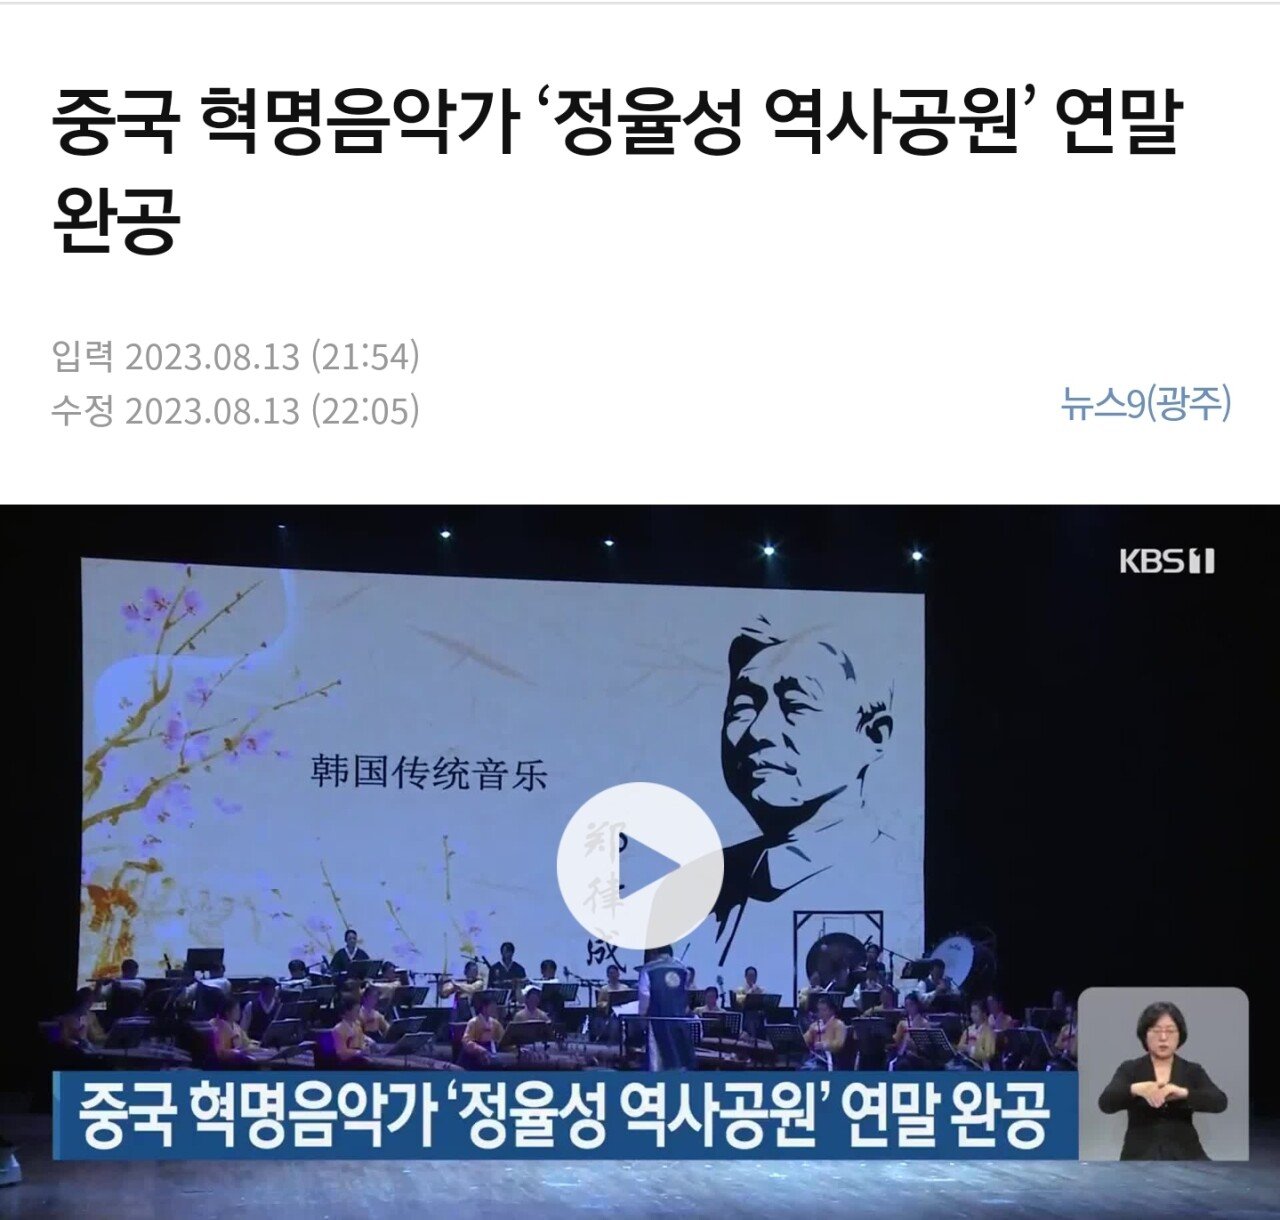 123.jpg 중국군/북한군의 행진곡 만든 음악가를 위해 기념공원을 만들고있음ㄷㄷㄷ